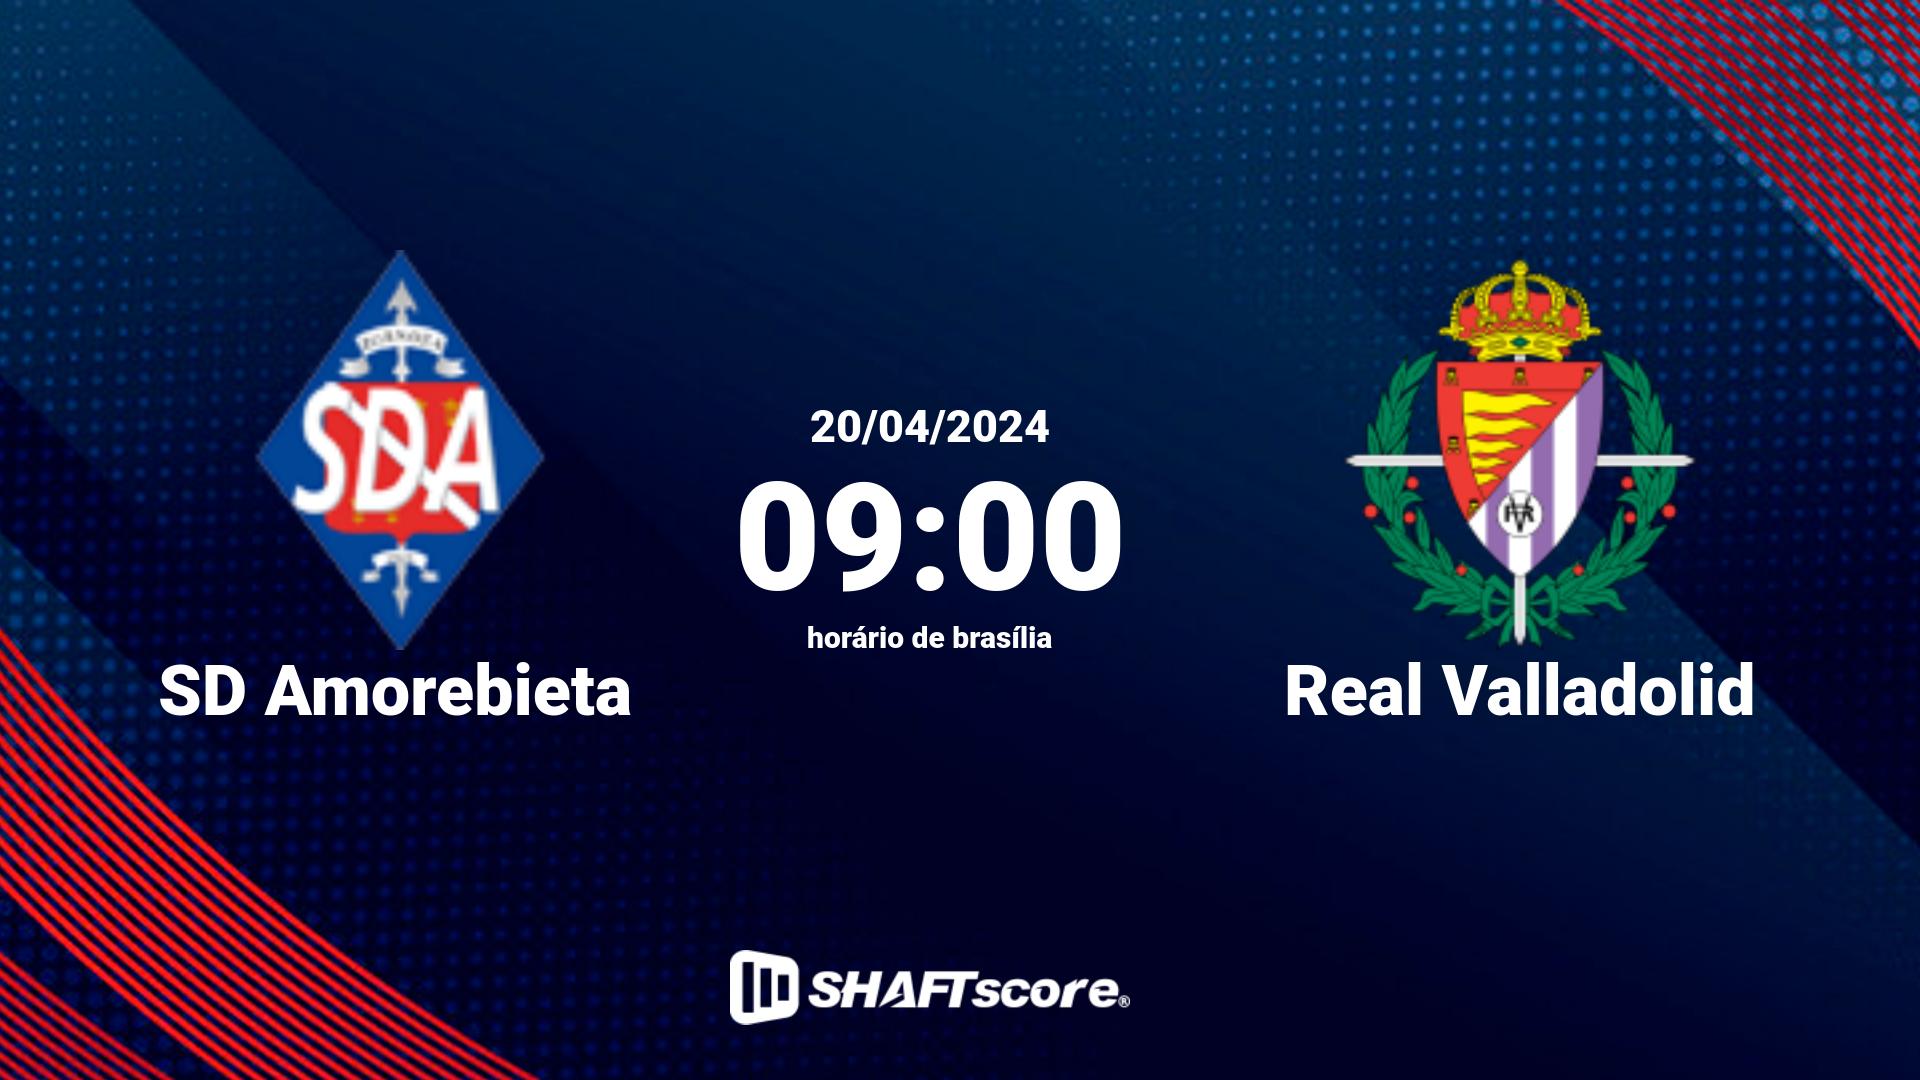 Estatísticas do jogo SD Amorebieta vs Real Valladolid 20.04 09:00